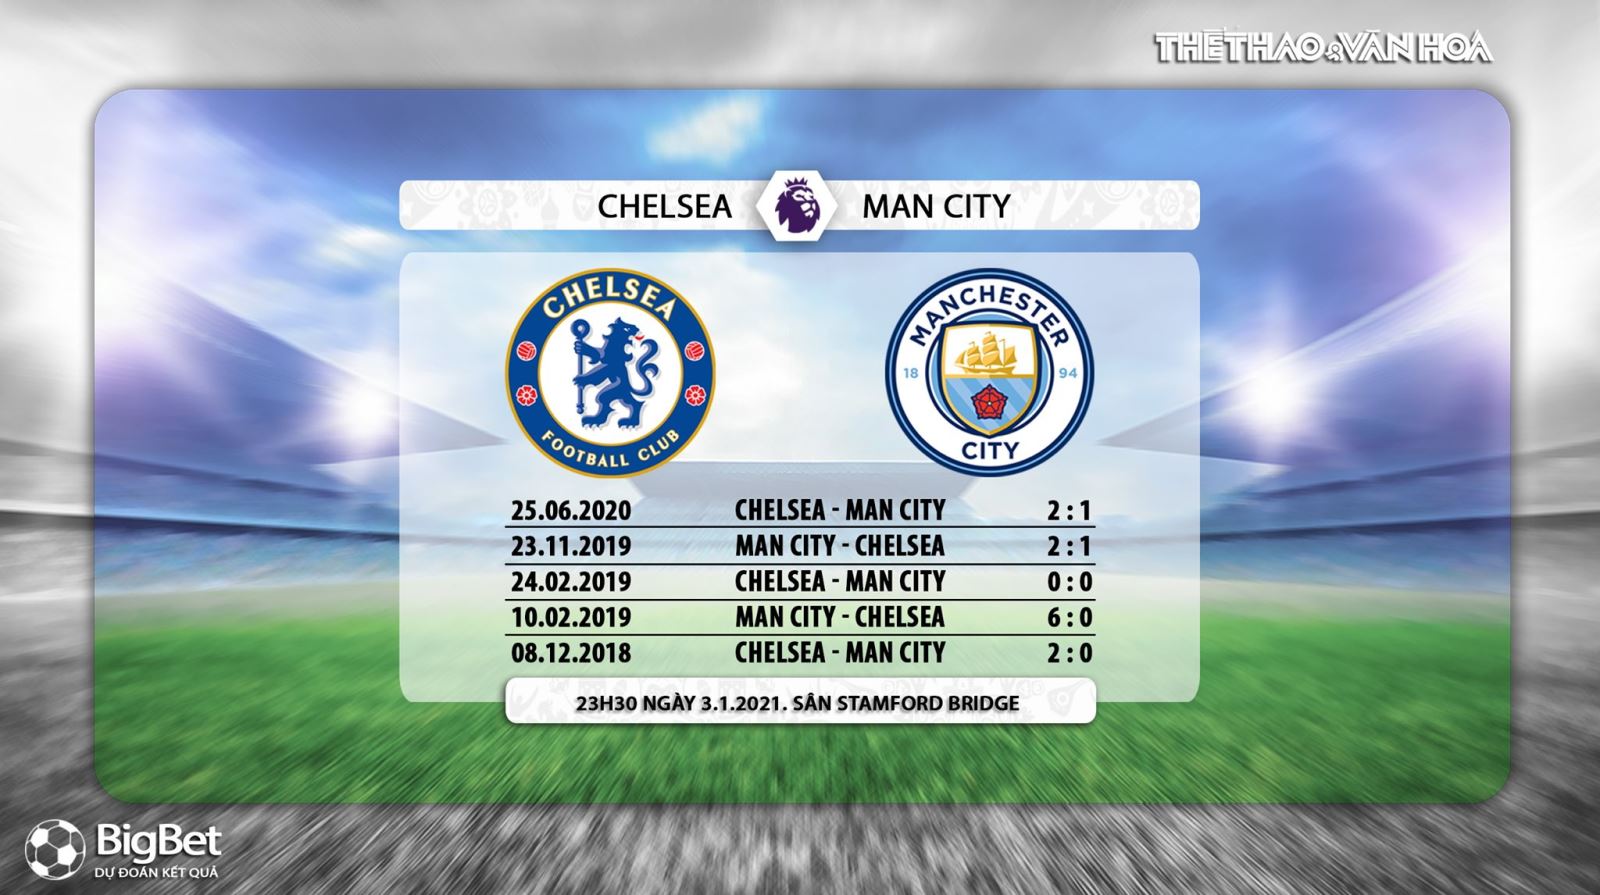 K+, K+PM, Trực tiếp bóng đá Anh hôm nay, Chelsea vs Man City. Nhận định kết quả, xem bóng đá trực tuyến Chelsea đấu với Man City, truc tiep bong da Ngoai hang Anh, Chelsea